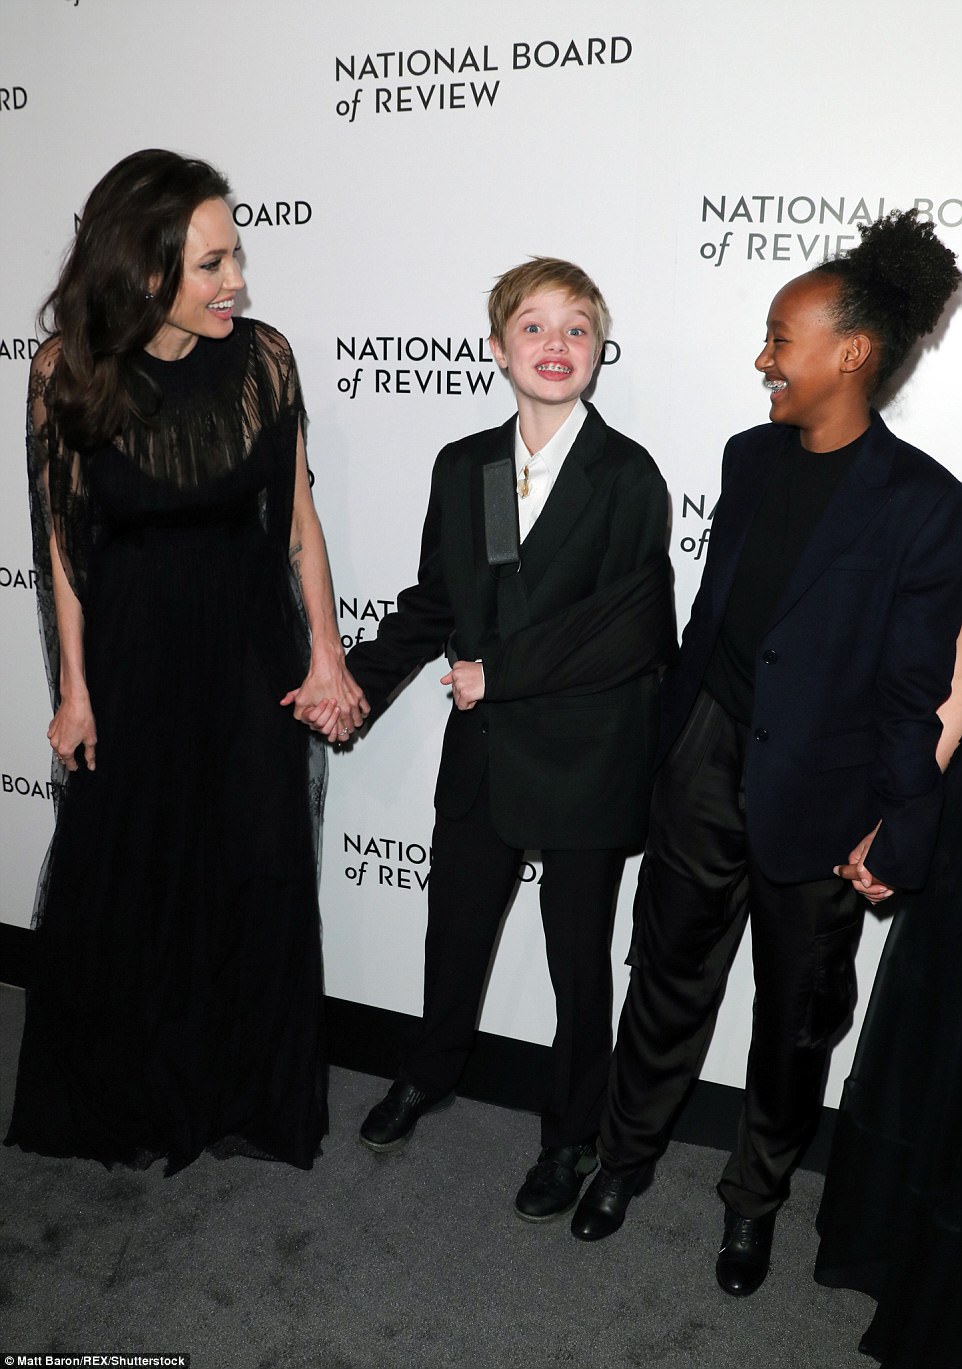 Семейка в черном: Анжелина Джоли с детьми на премии NBR Awards-2018